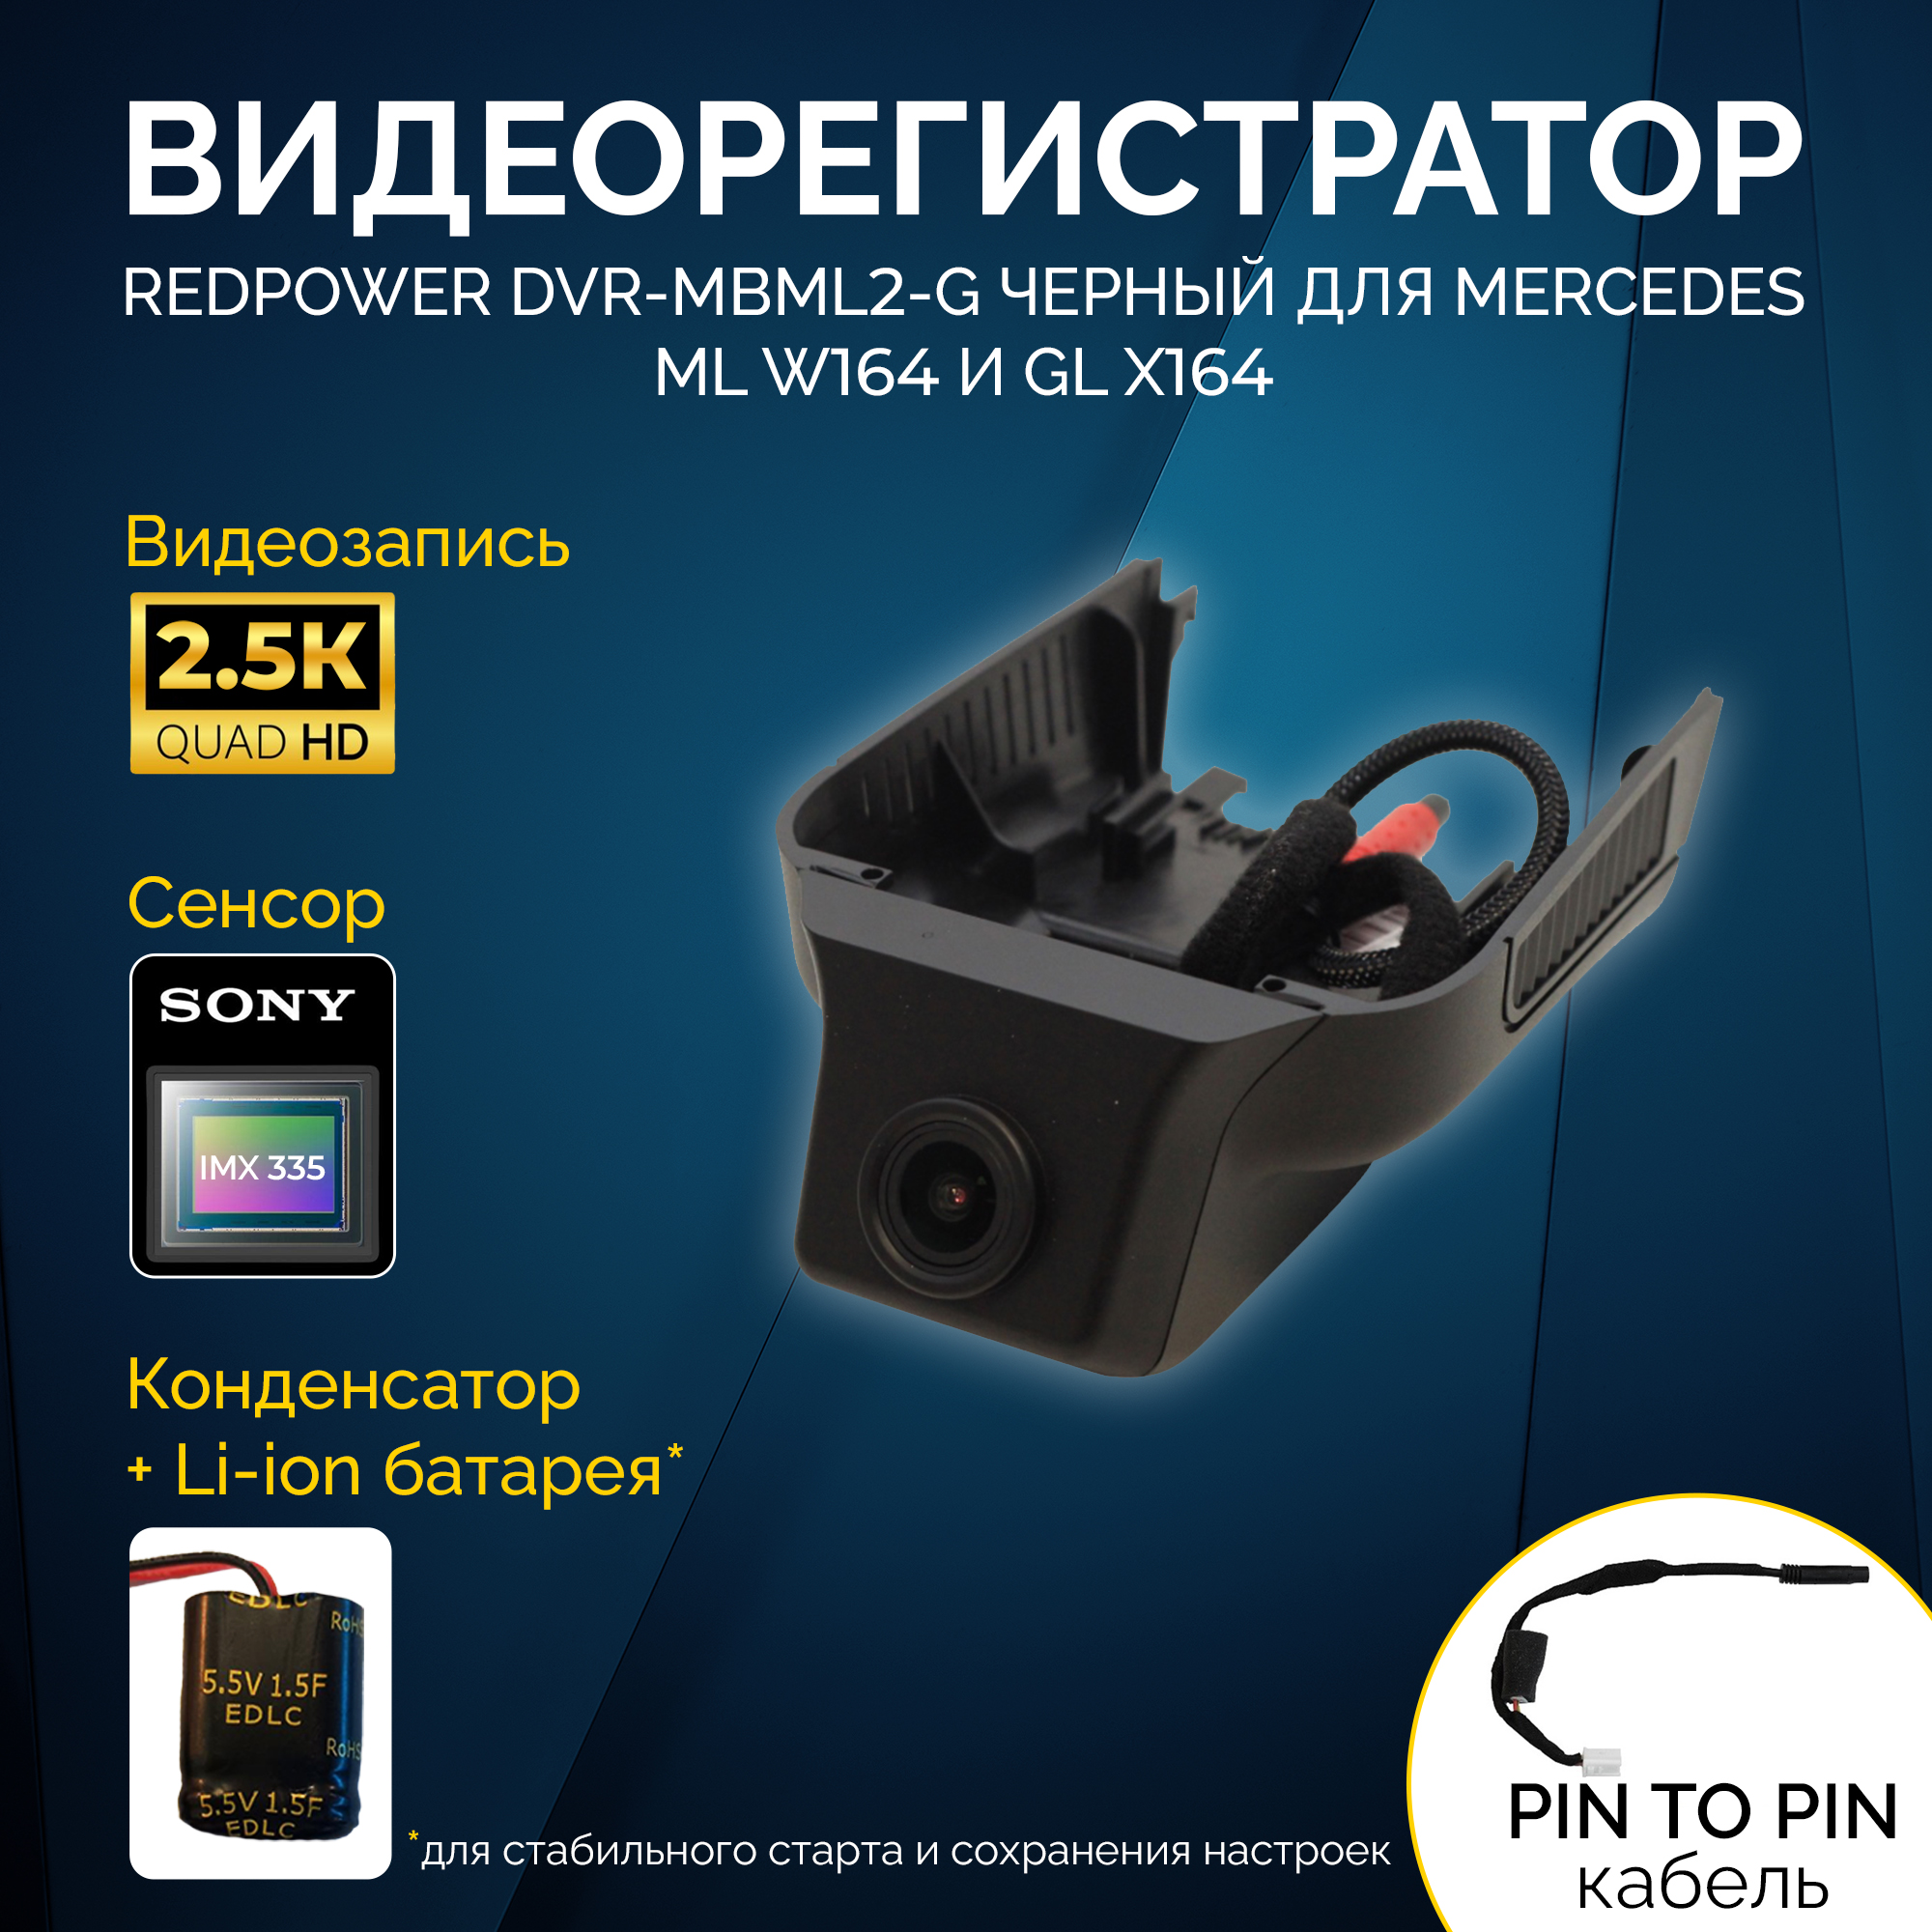 Штатный видеорегистратор RedPower DVR-MBML2-G черный для Mercedes ML и GL (2005-2012)